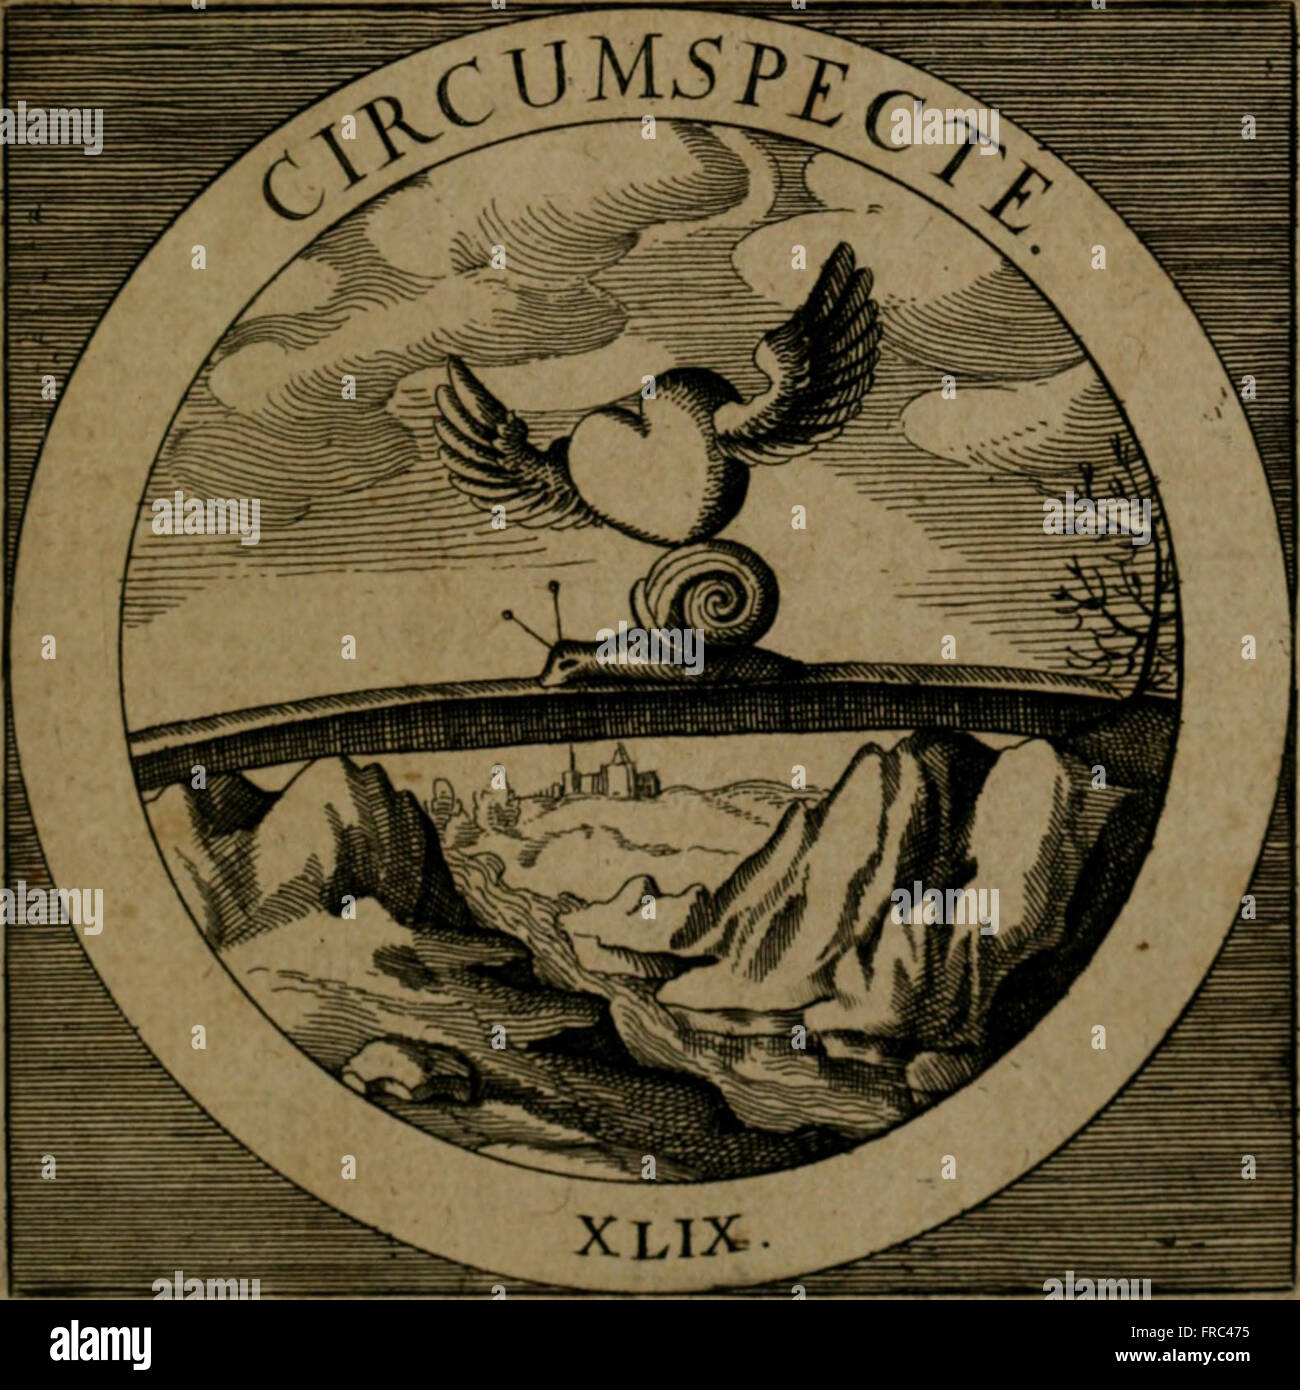 Emblemata sacra - hoc est, decades quinque emblematum ex sacra scriptura, de dulcissimo nomine and cruce Jesu Christi, figuris aeneis incisorum (1624) Stock Photo